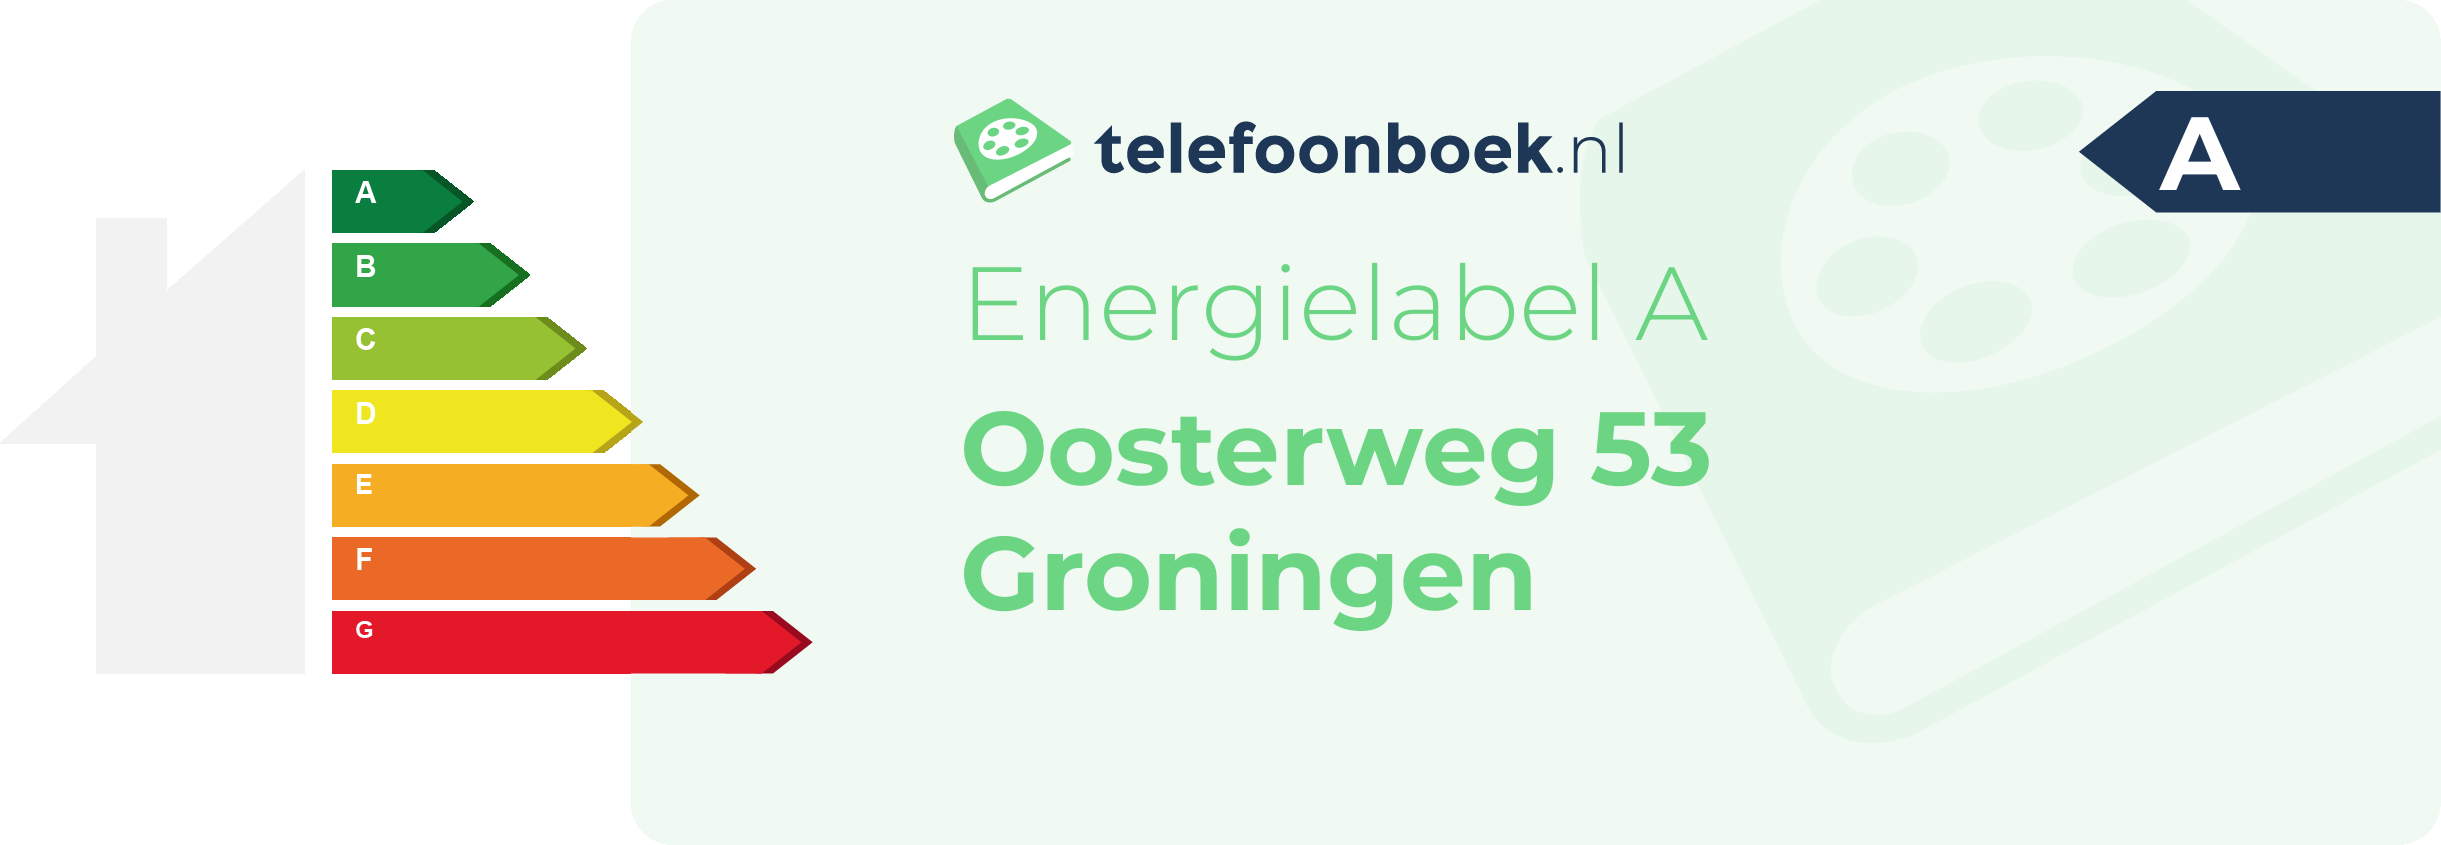 Energielabel Oosterweg 53 Groningen